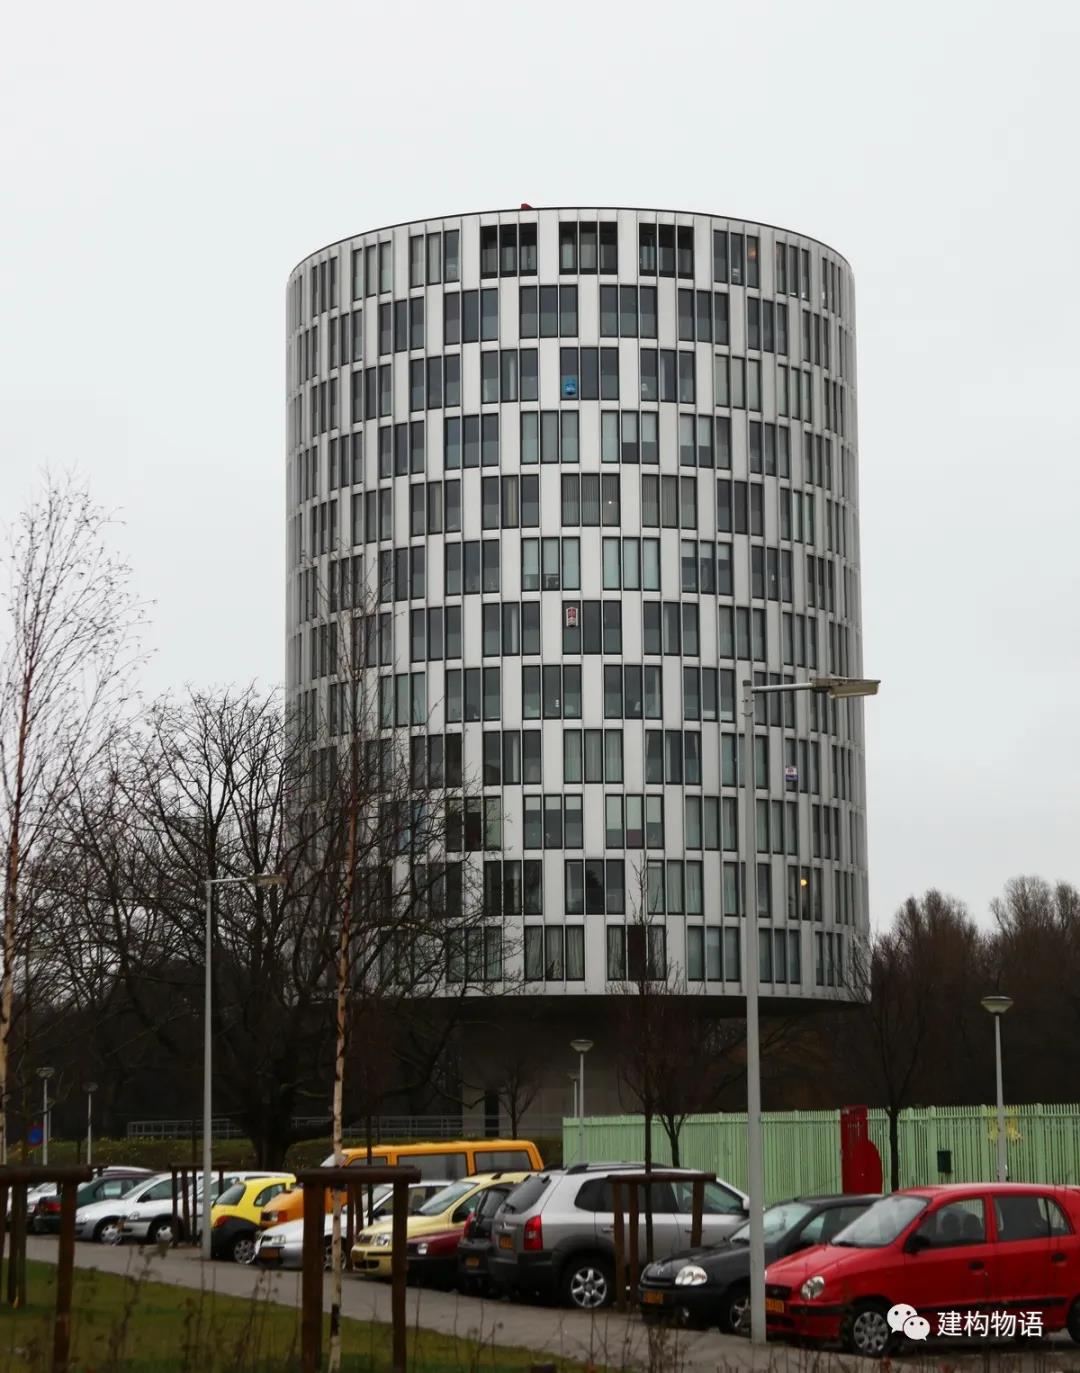 荷兰阿姆斯特丹某圆柱形建筑错动的窗户增加了形式的丰富性。.jpg